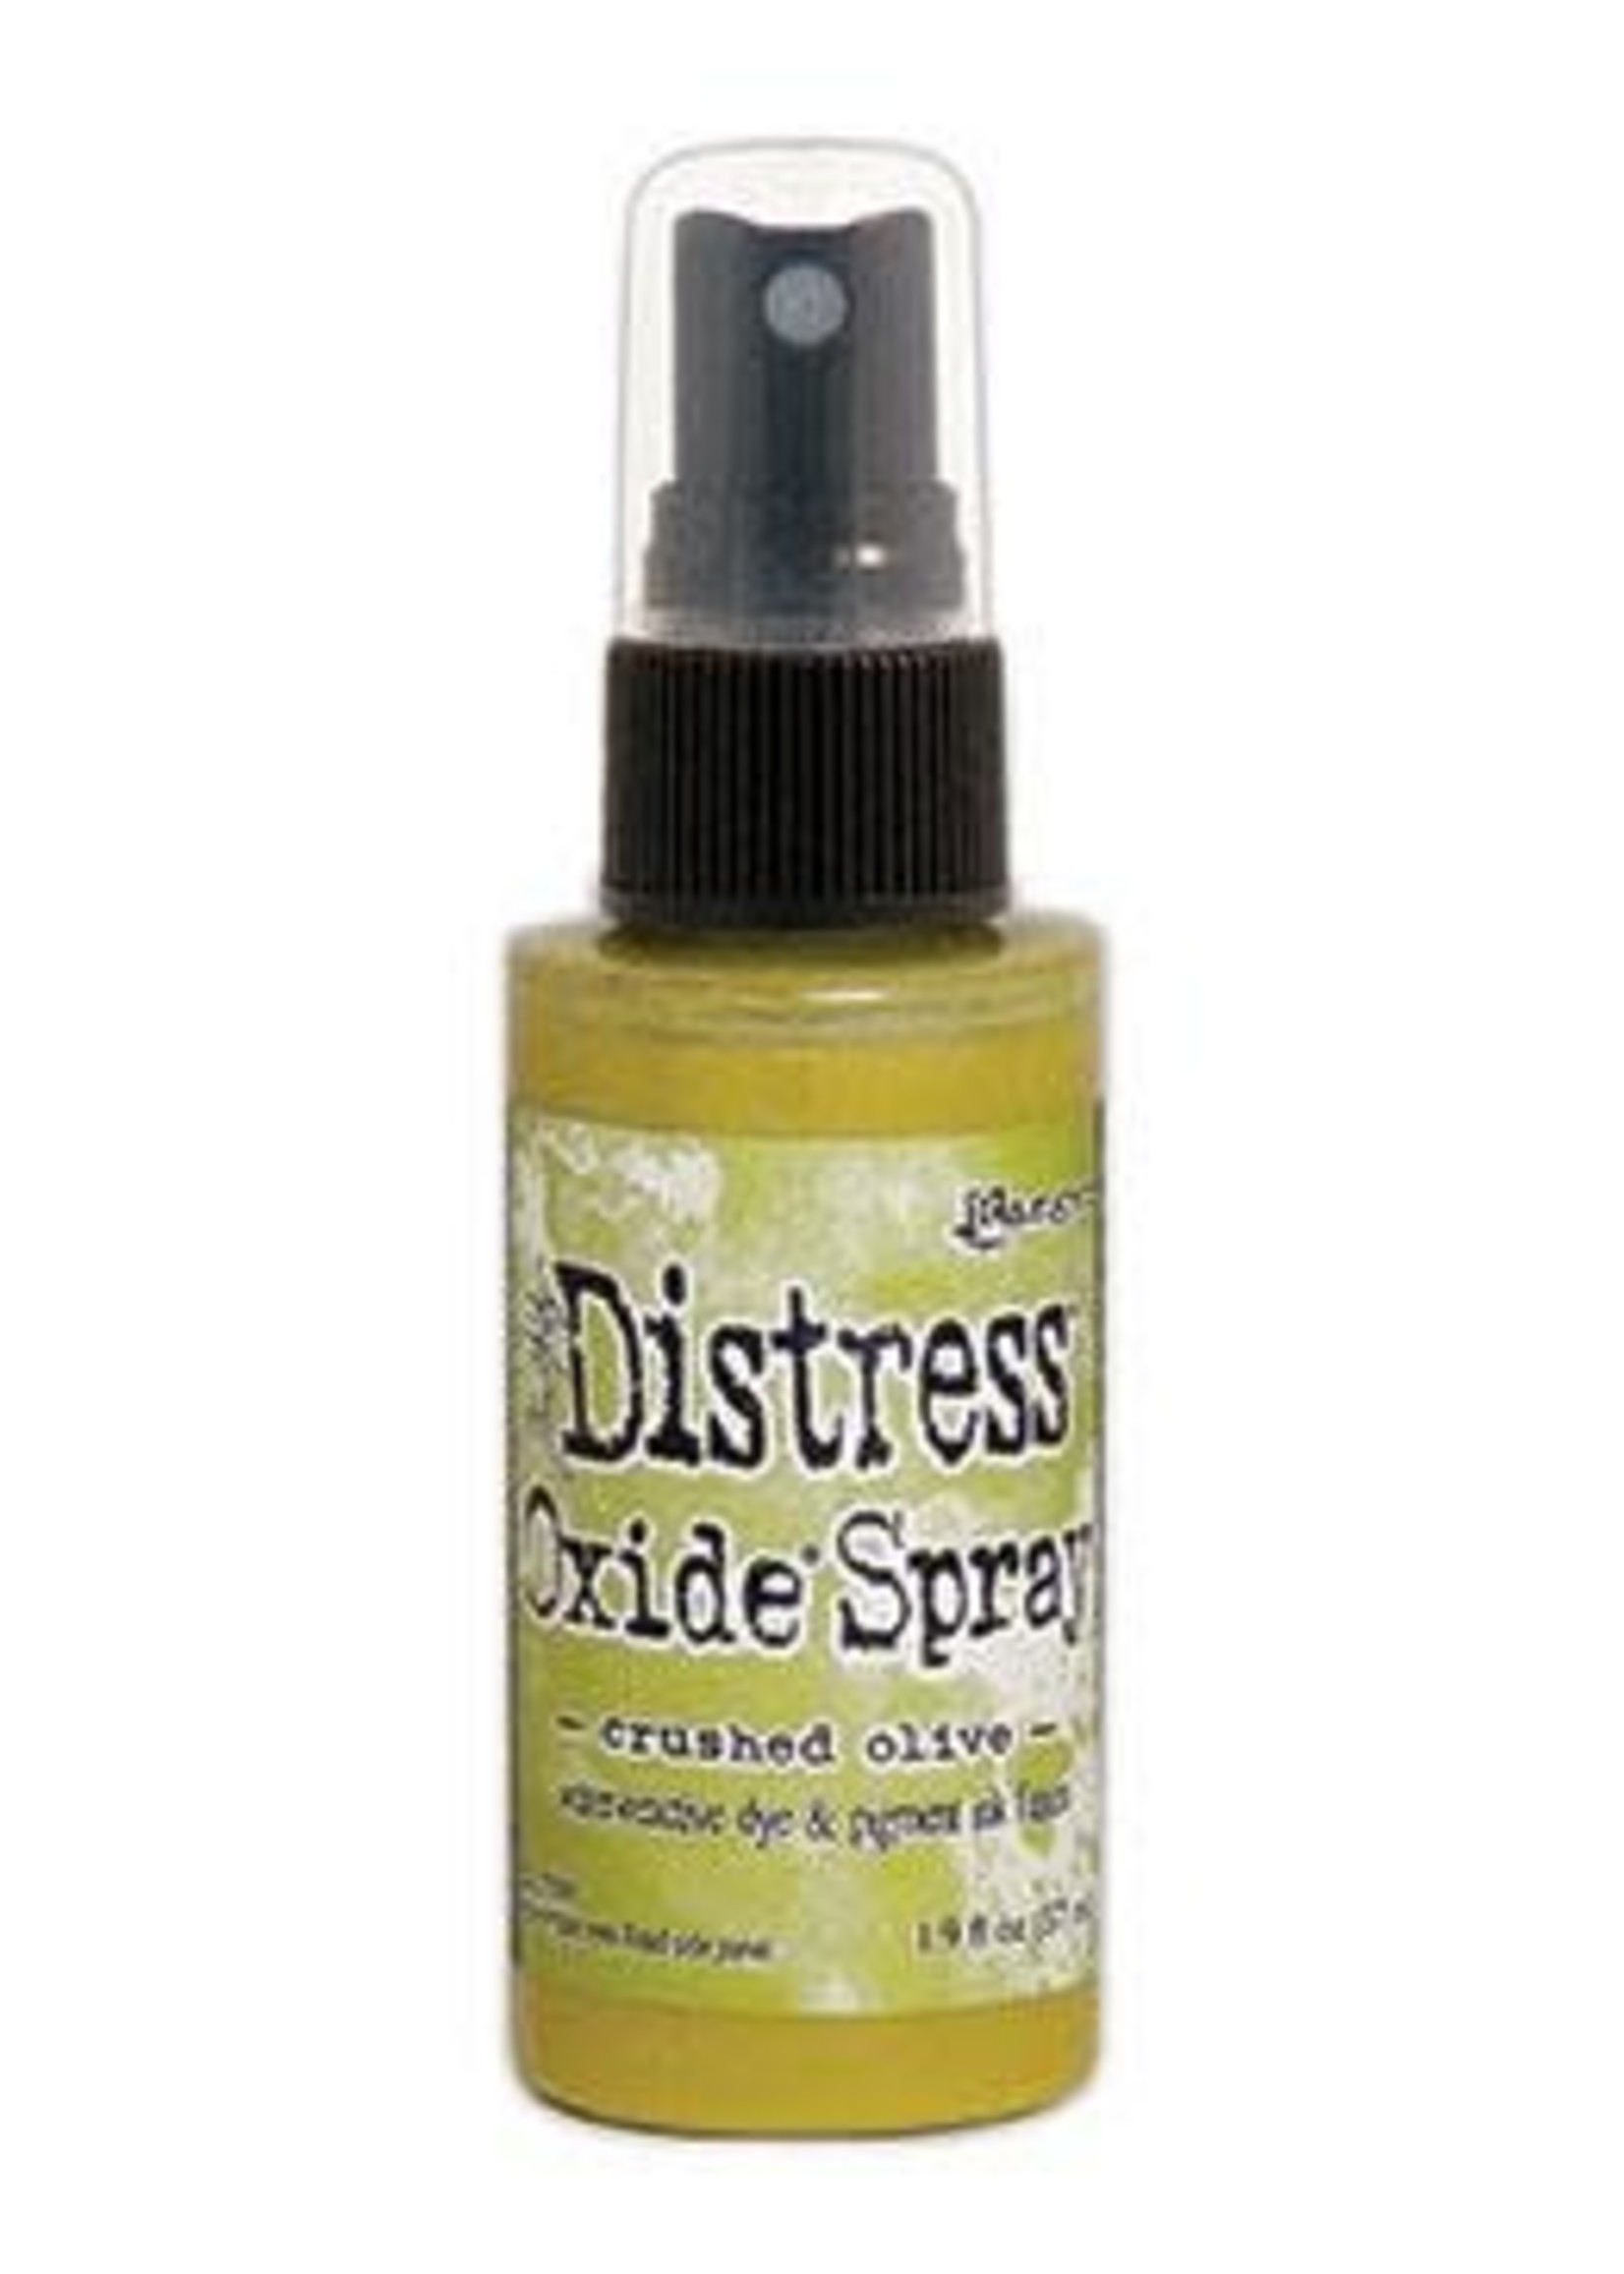 RANGER Distress Oxide Spray Crushed Olive